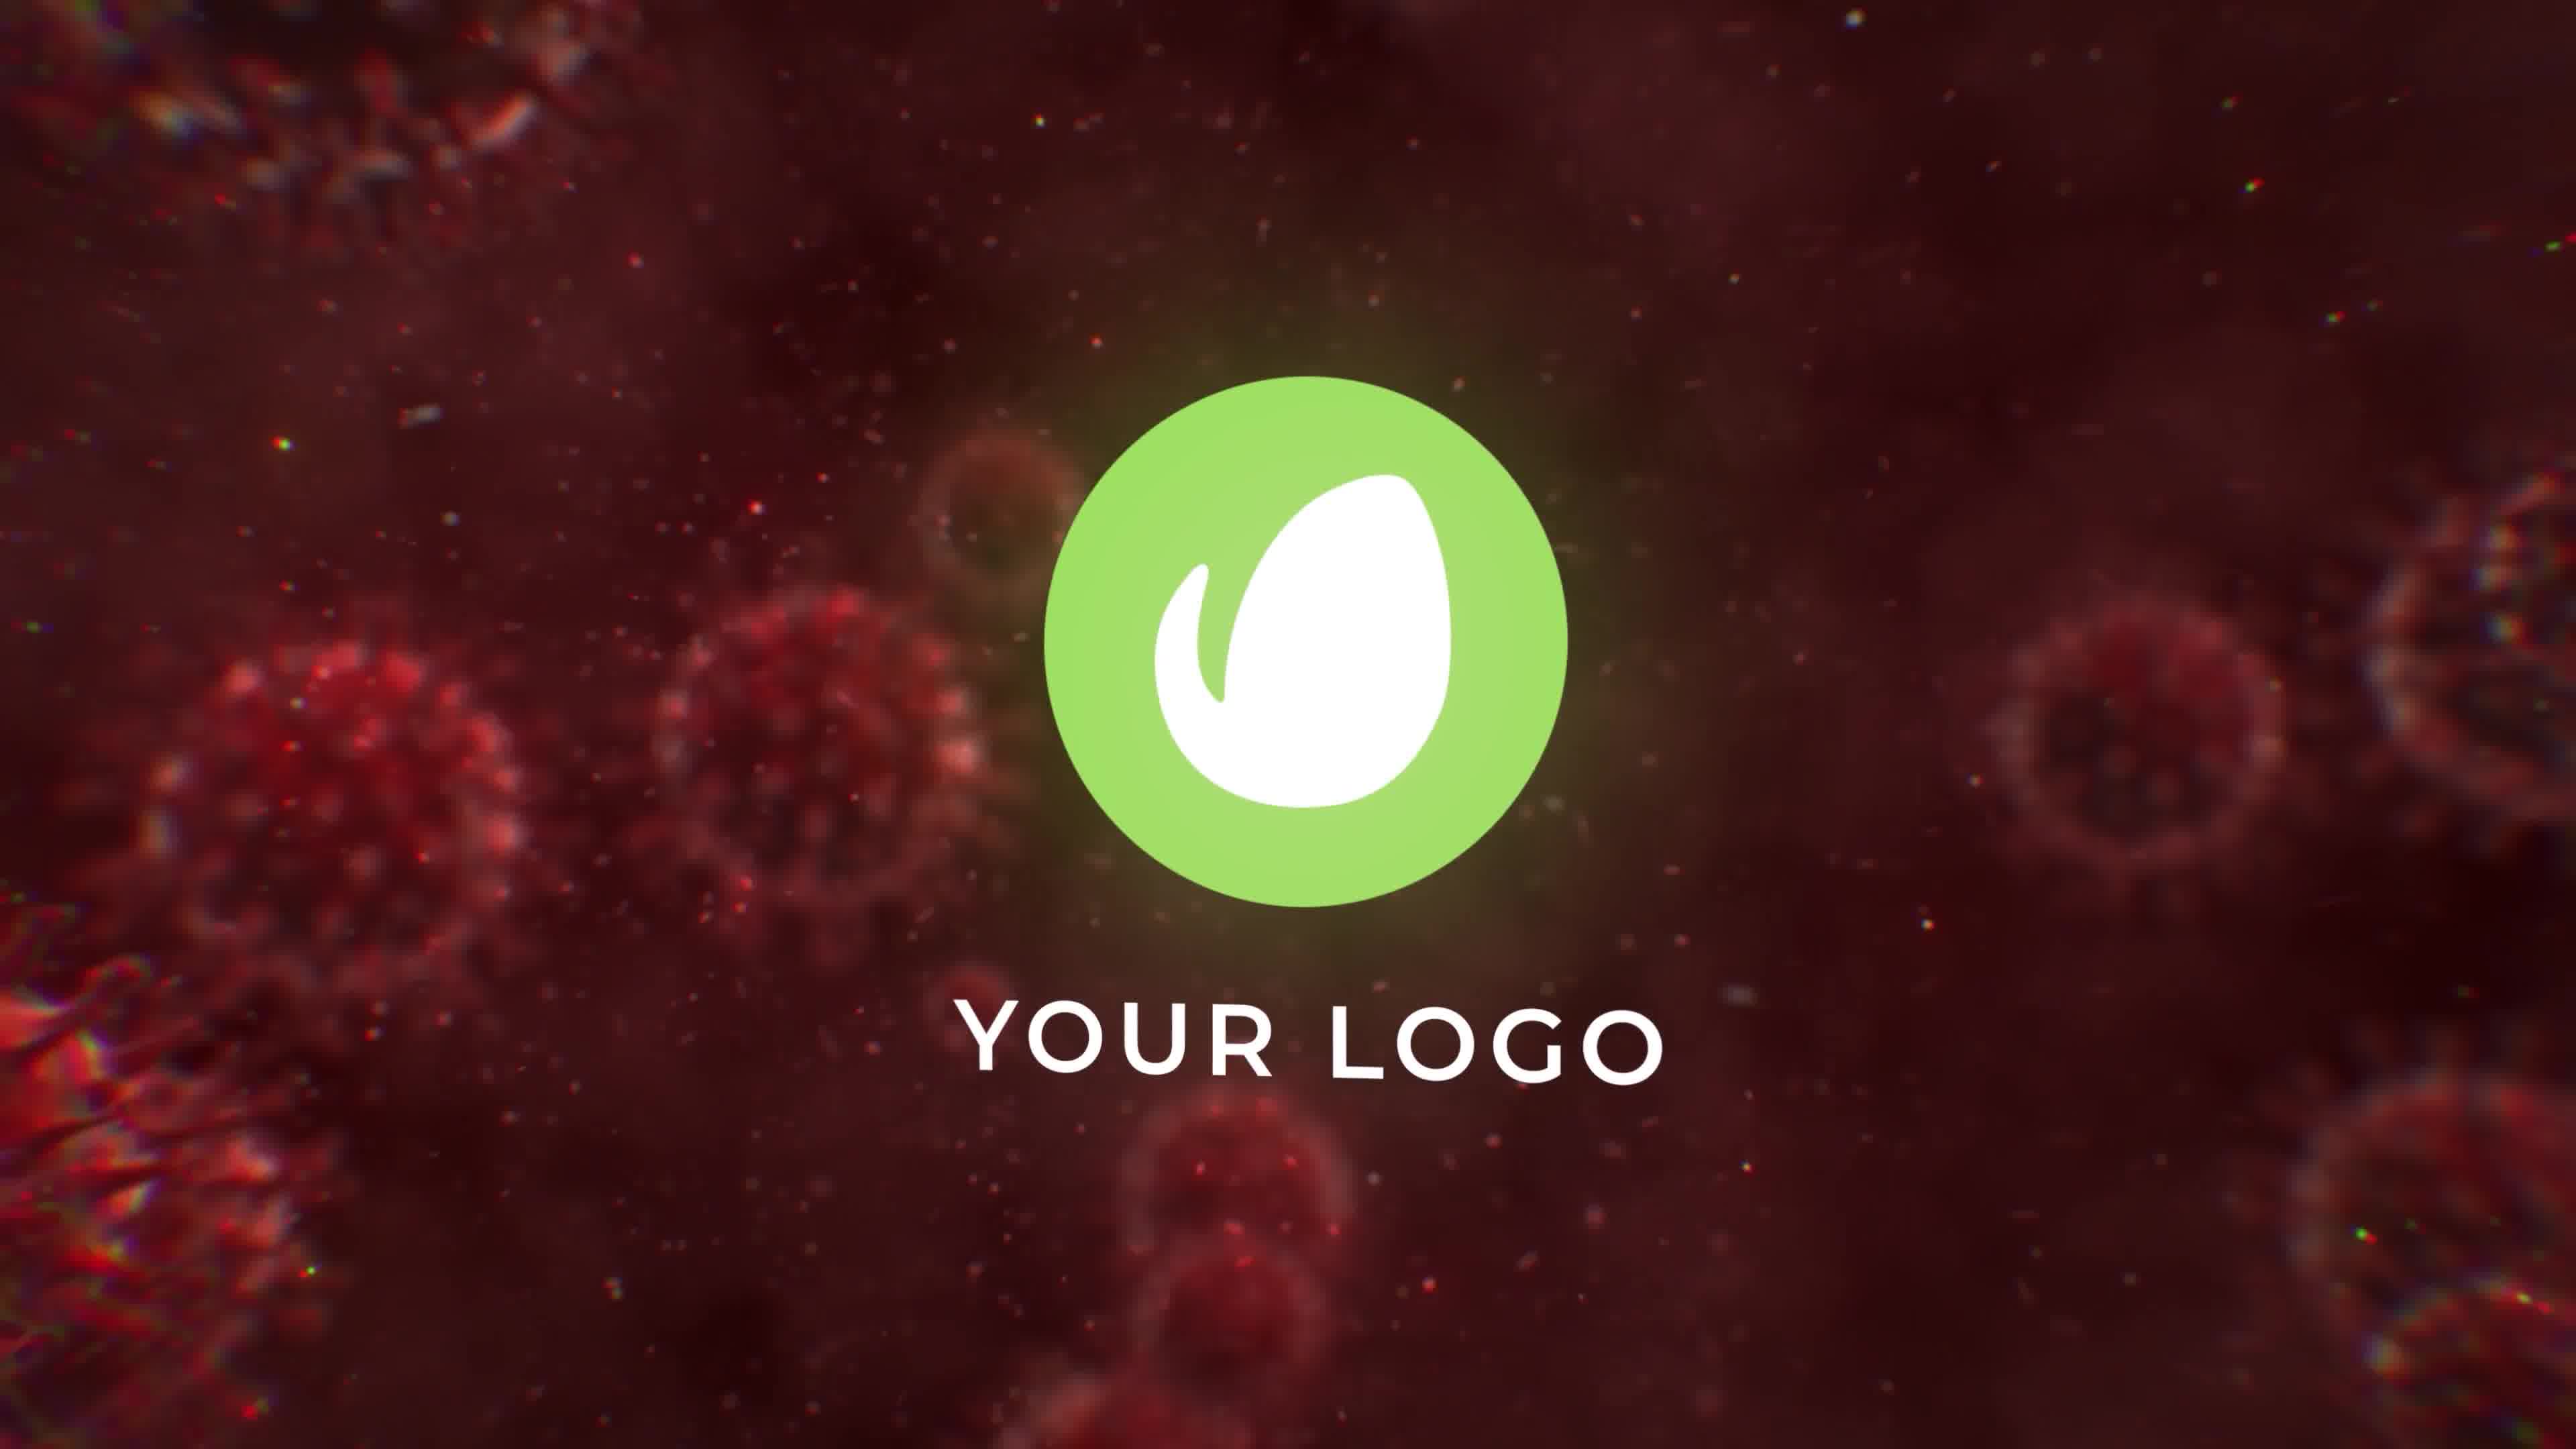 Virus Destruction Logo Reveal Videohive 26328449 Premiere Pro Image 10